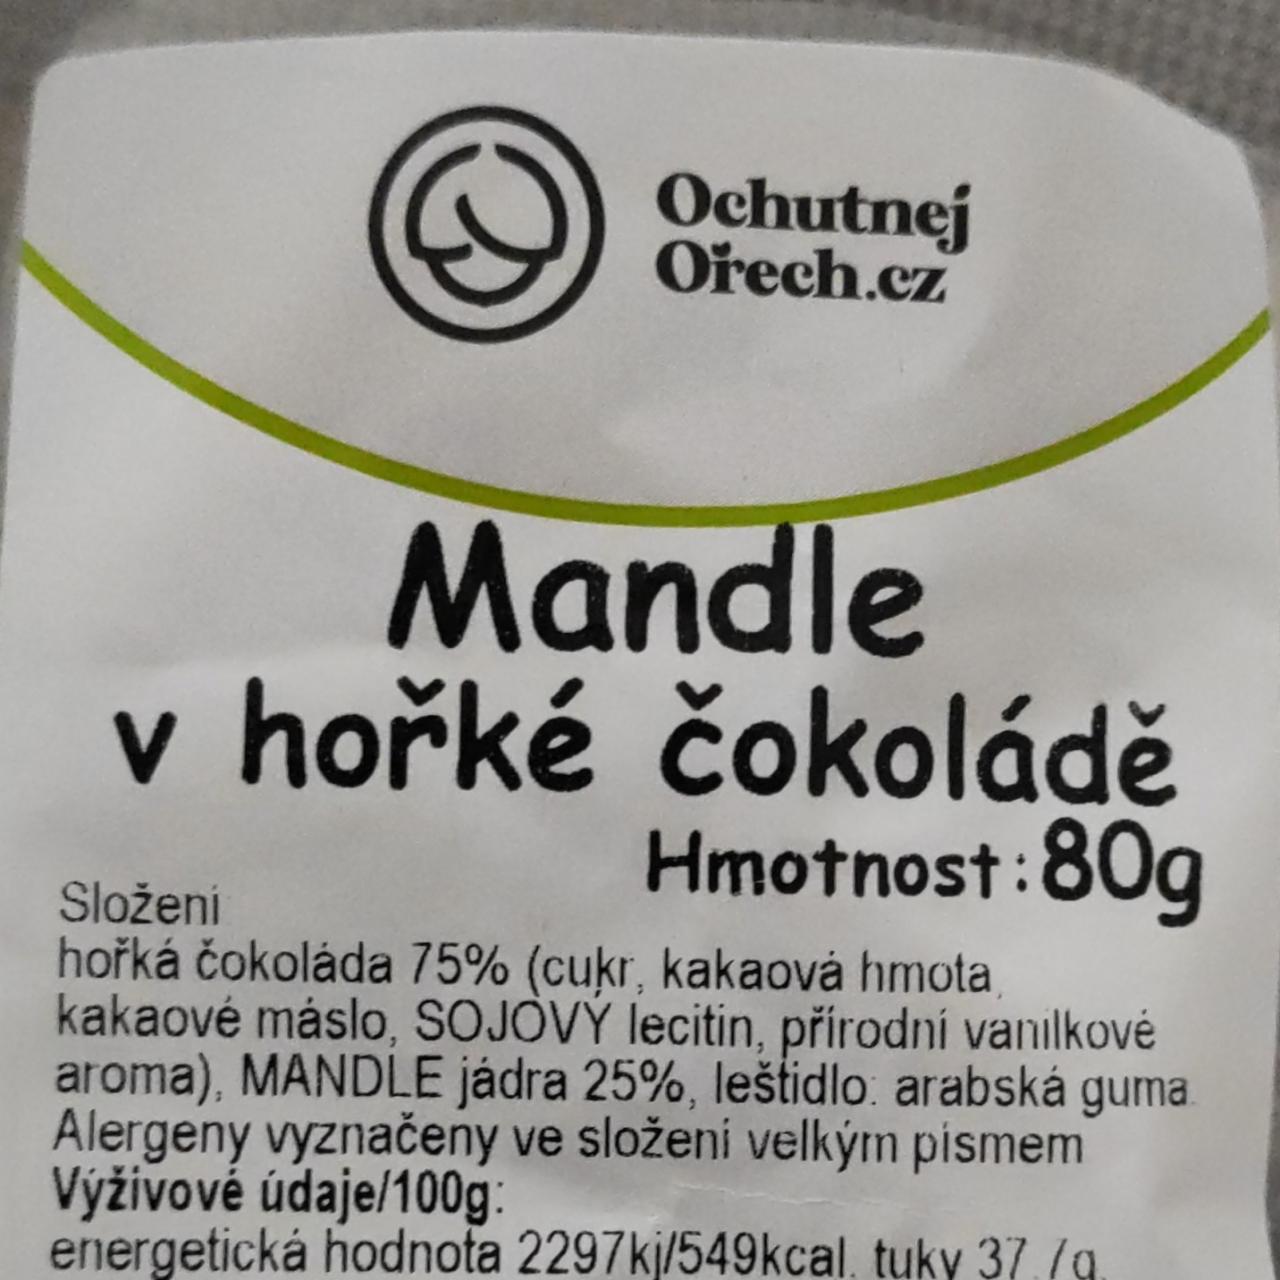 Fotografie - Mandle v hořké čokoládě Ochutnejorech.cz